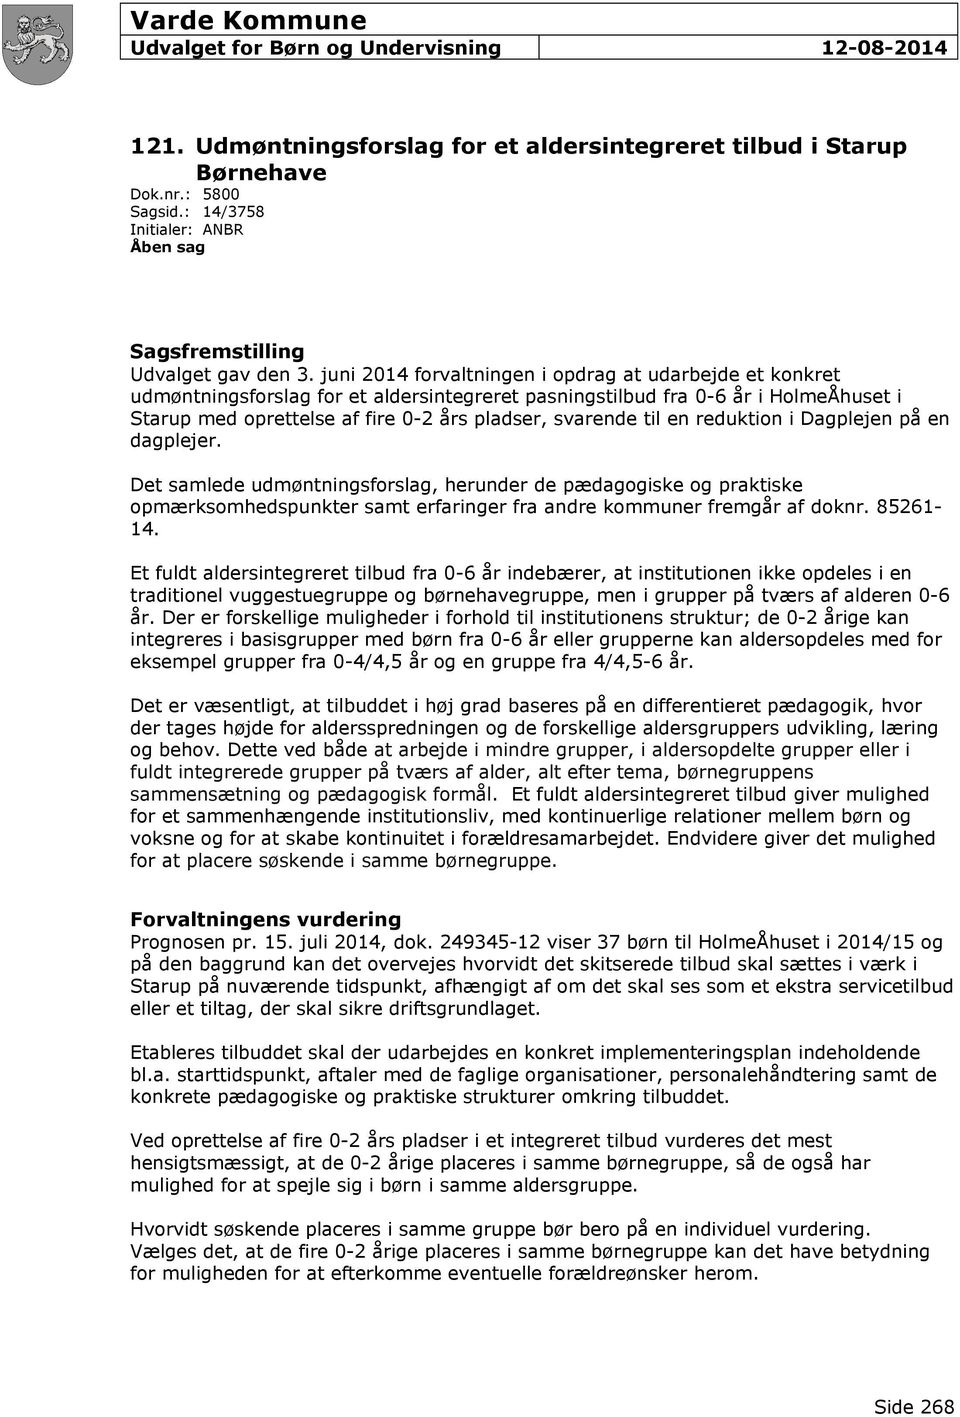 juni 2014 forvaltningen i opdrag at udarbejde et konkret udmøntningsforslag for et aldersintegreret pasningstilbud fra 0-6 år i HolmeÅhuset i Starup med oprettelse af fire 0-2 års pladser, svarende